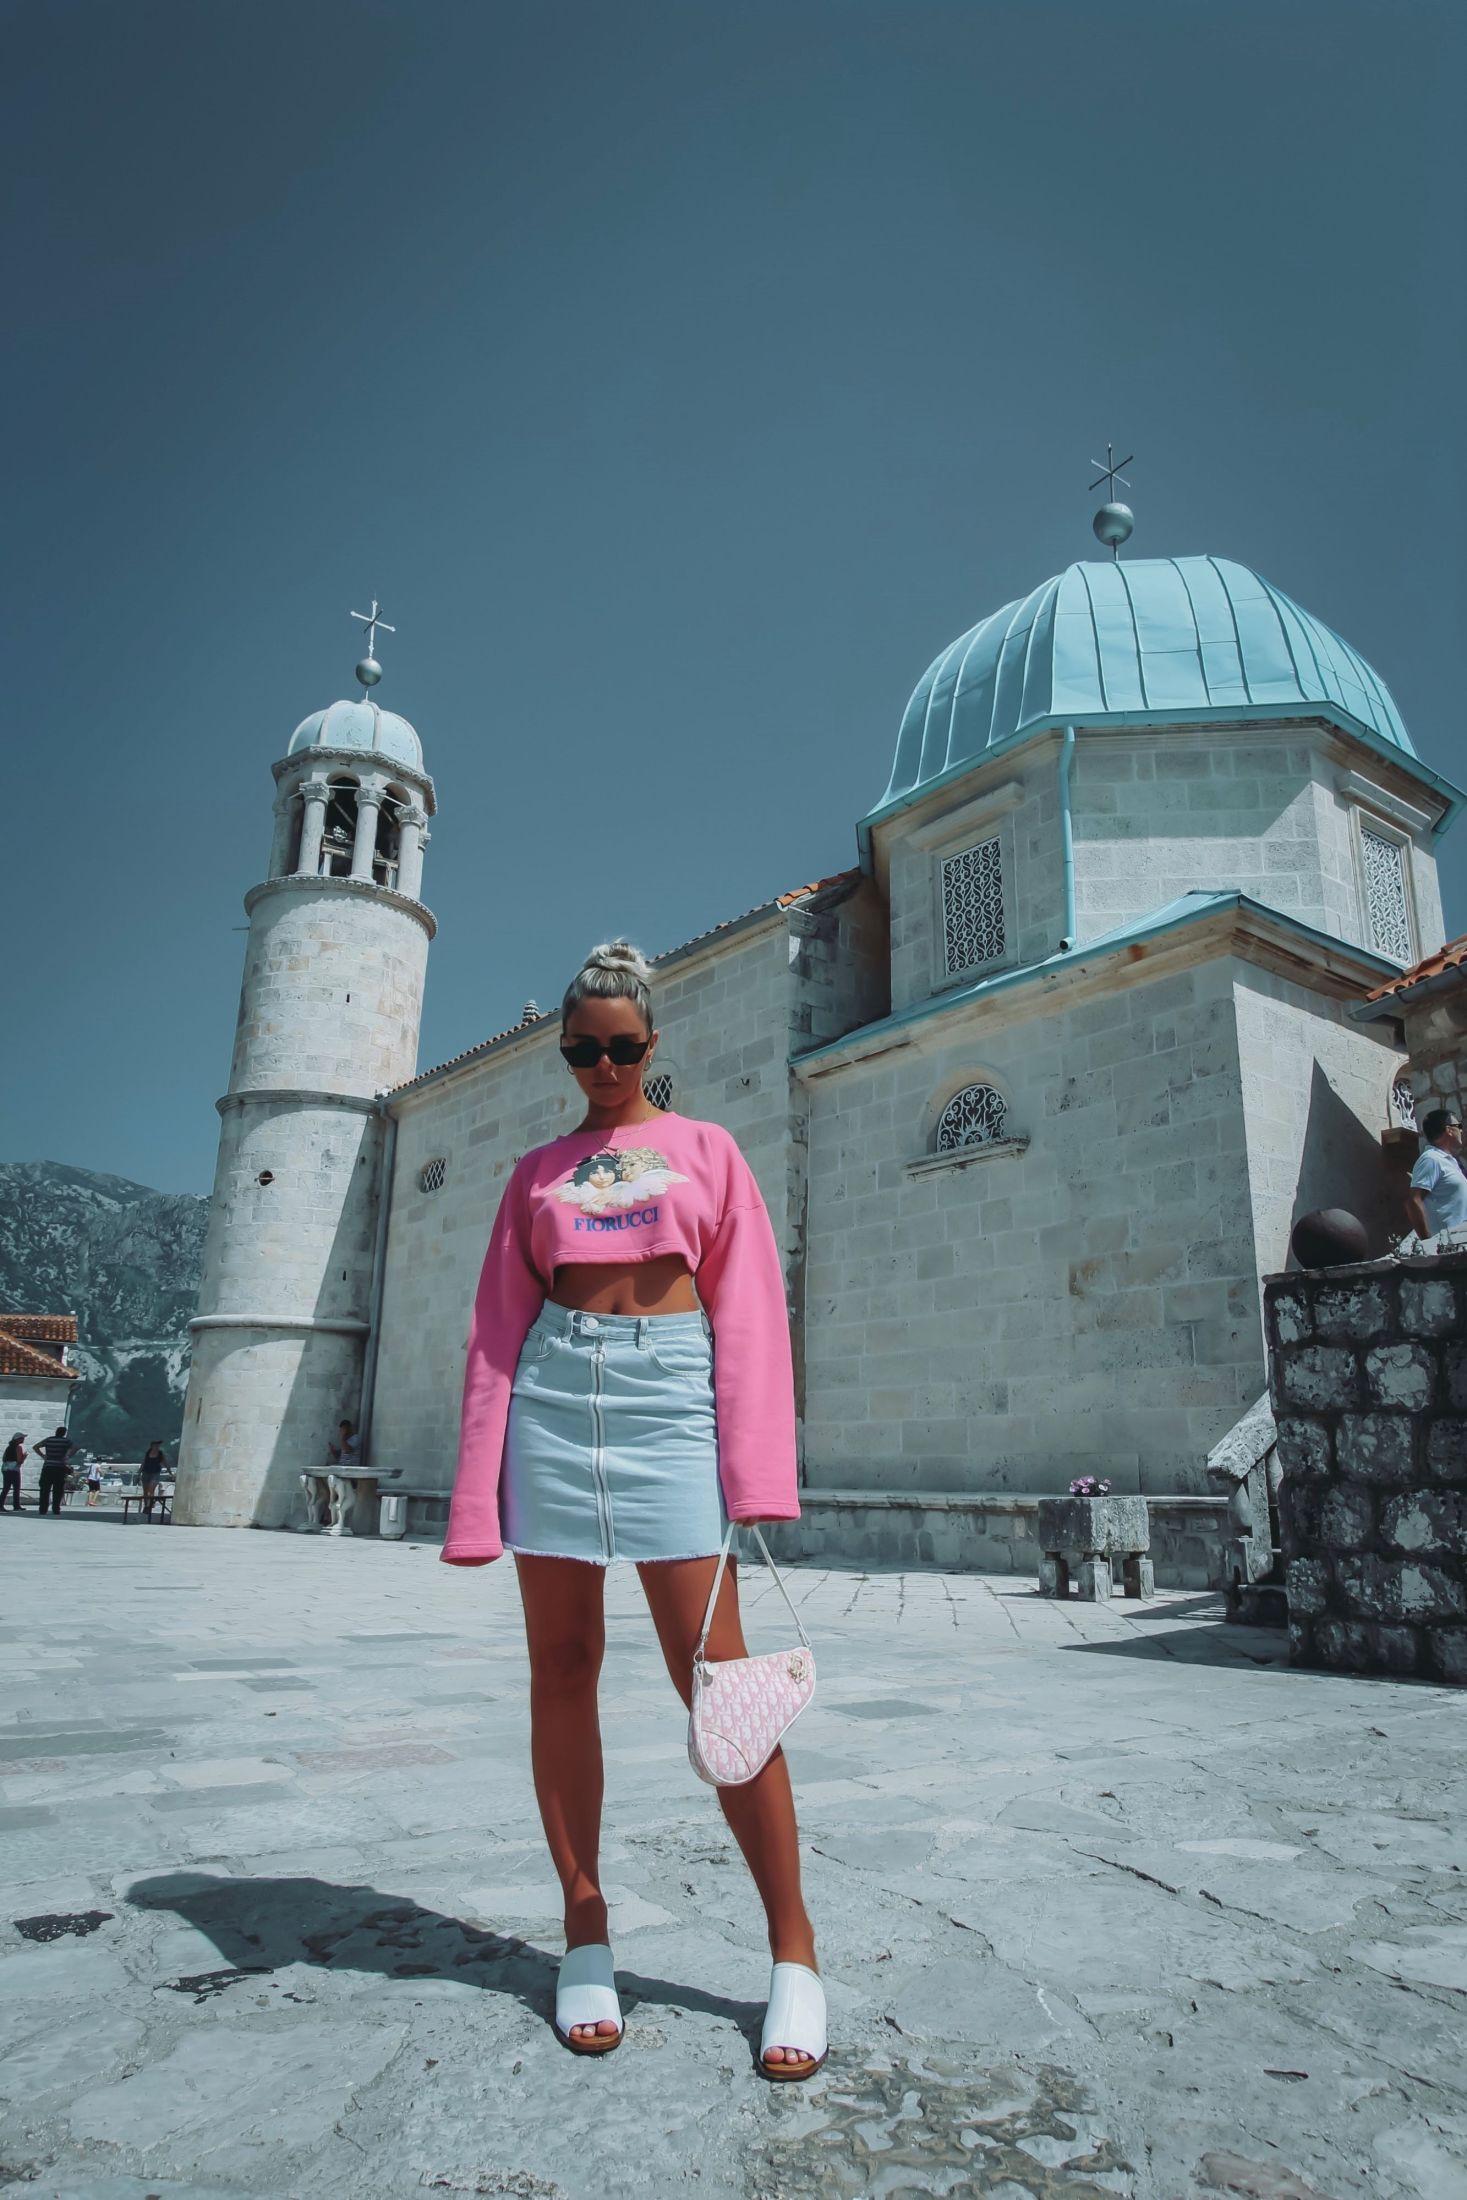 PÅ REISE: Elise Bahia Gabrielsen elsker å reise, og savnet å skrive om sine mange eventyr. Her er hun i Montenegro. Foto: Privat